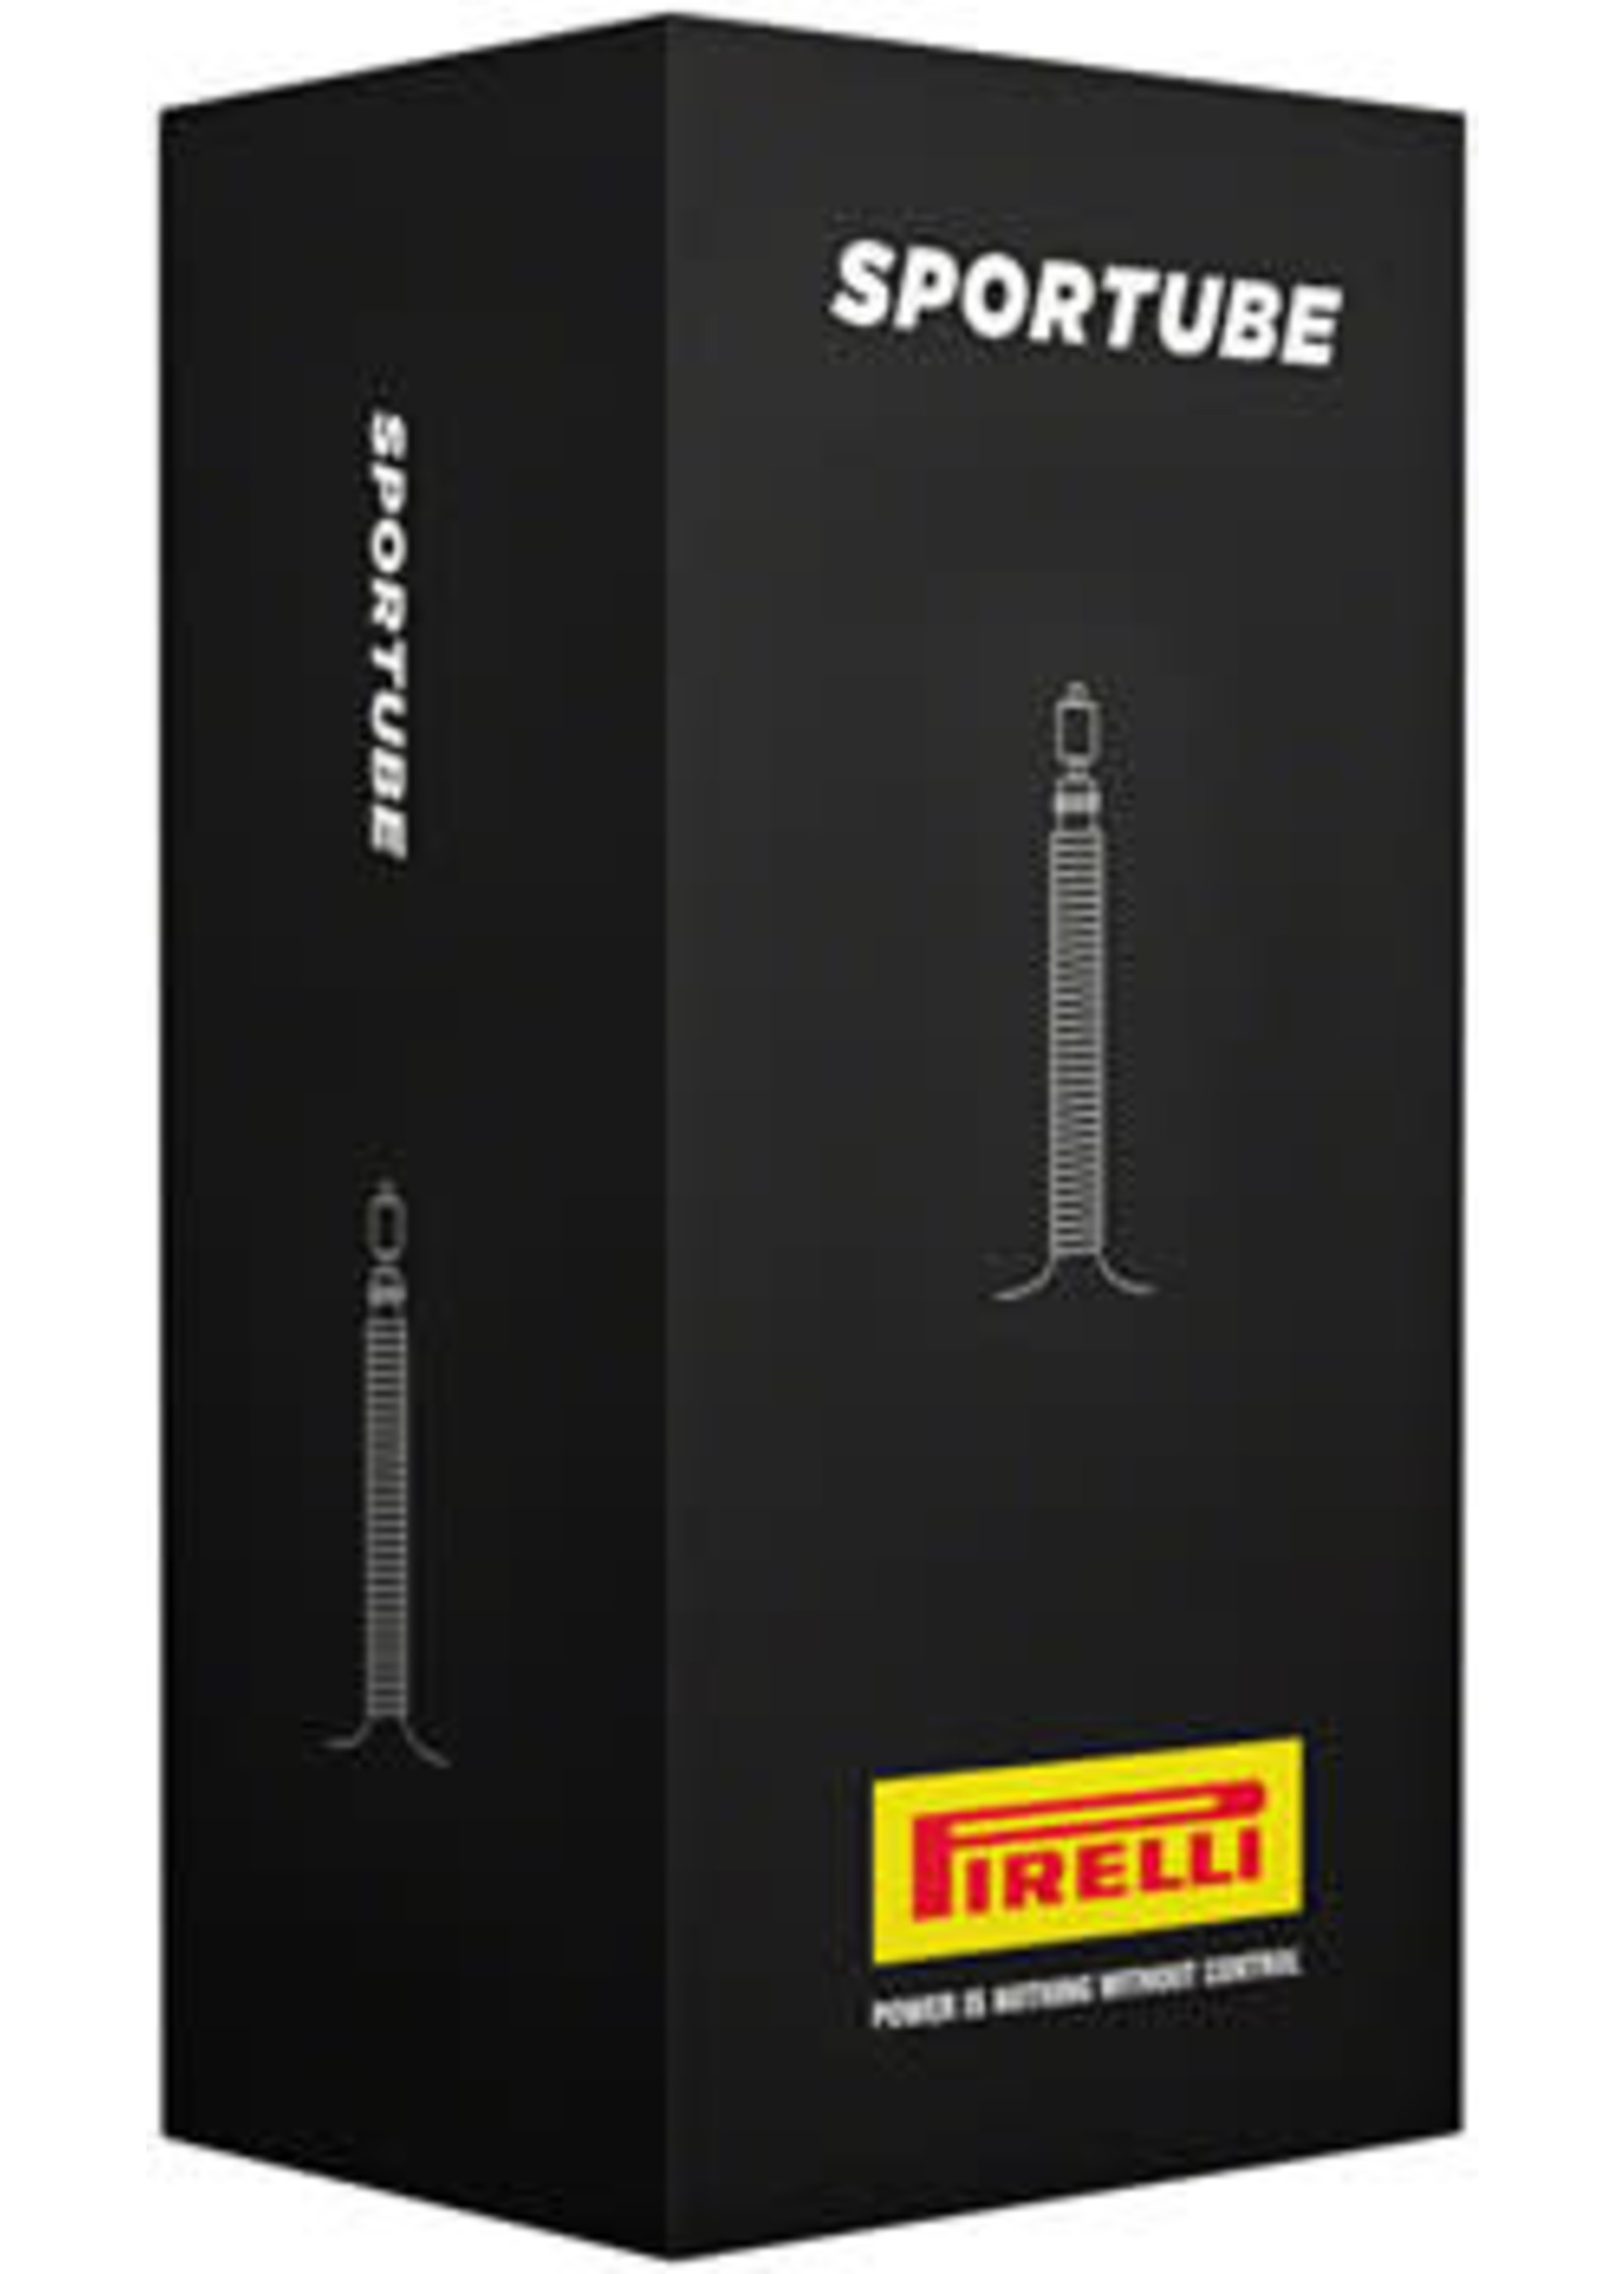 Pirelli Pirelli SporTube Tube - 700 x 42-50mm, 48mm, Presta Valve